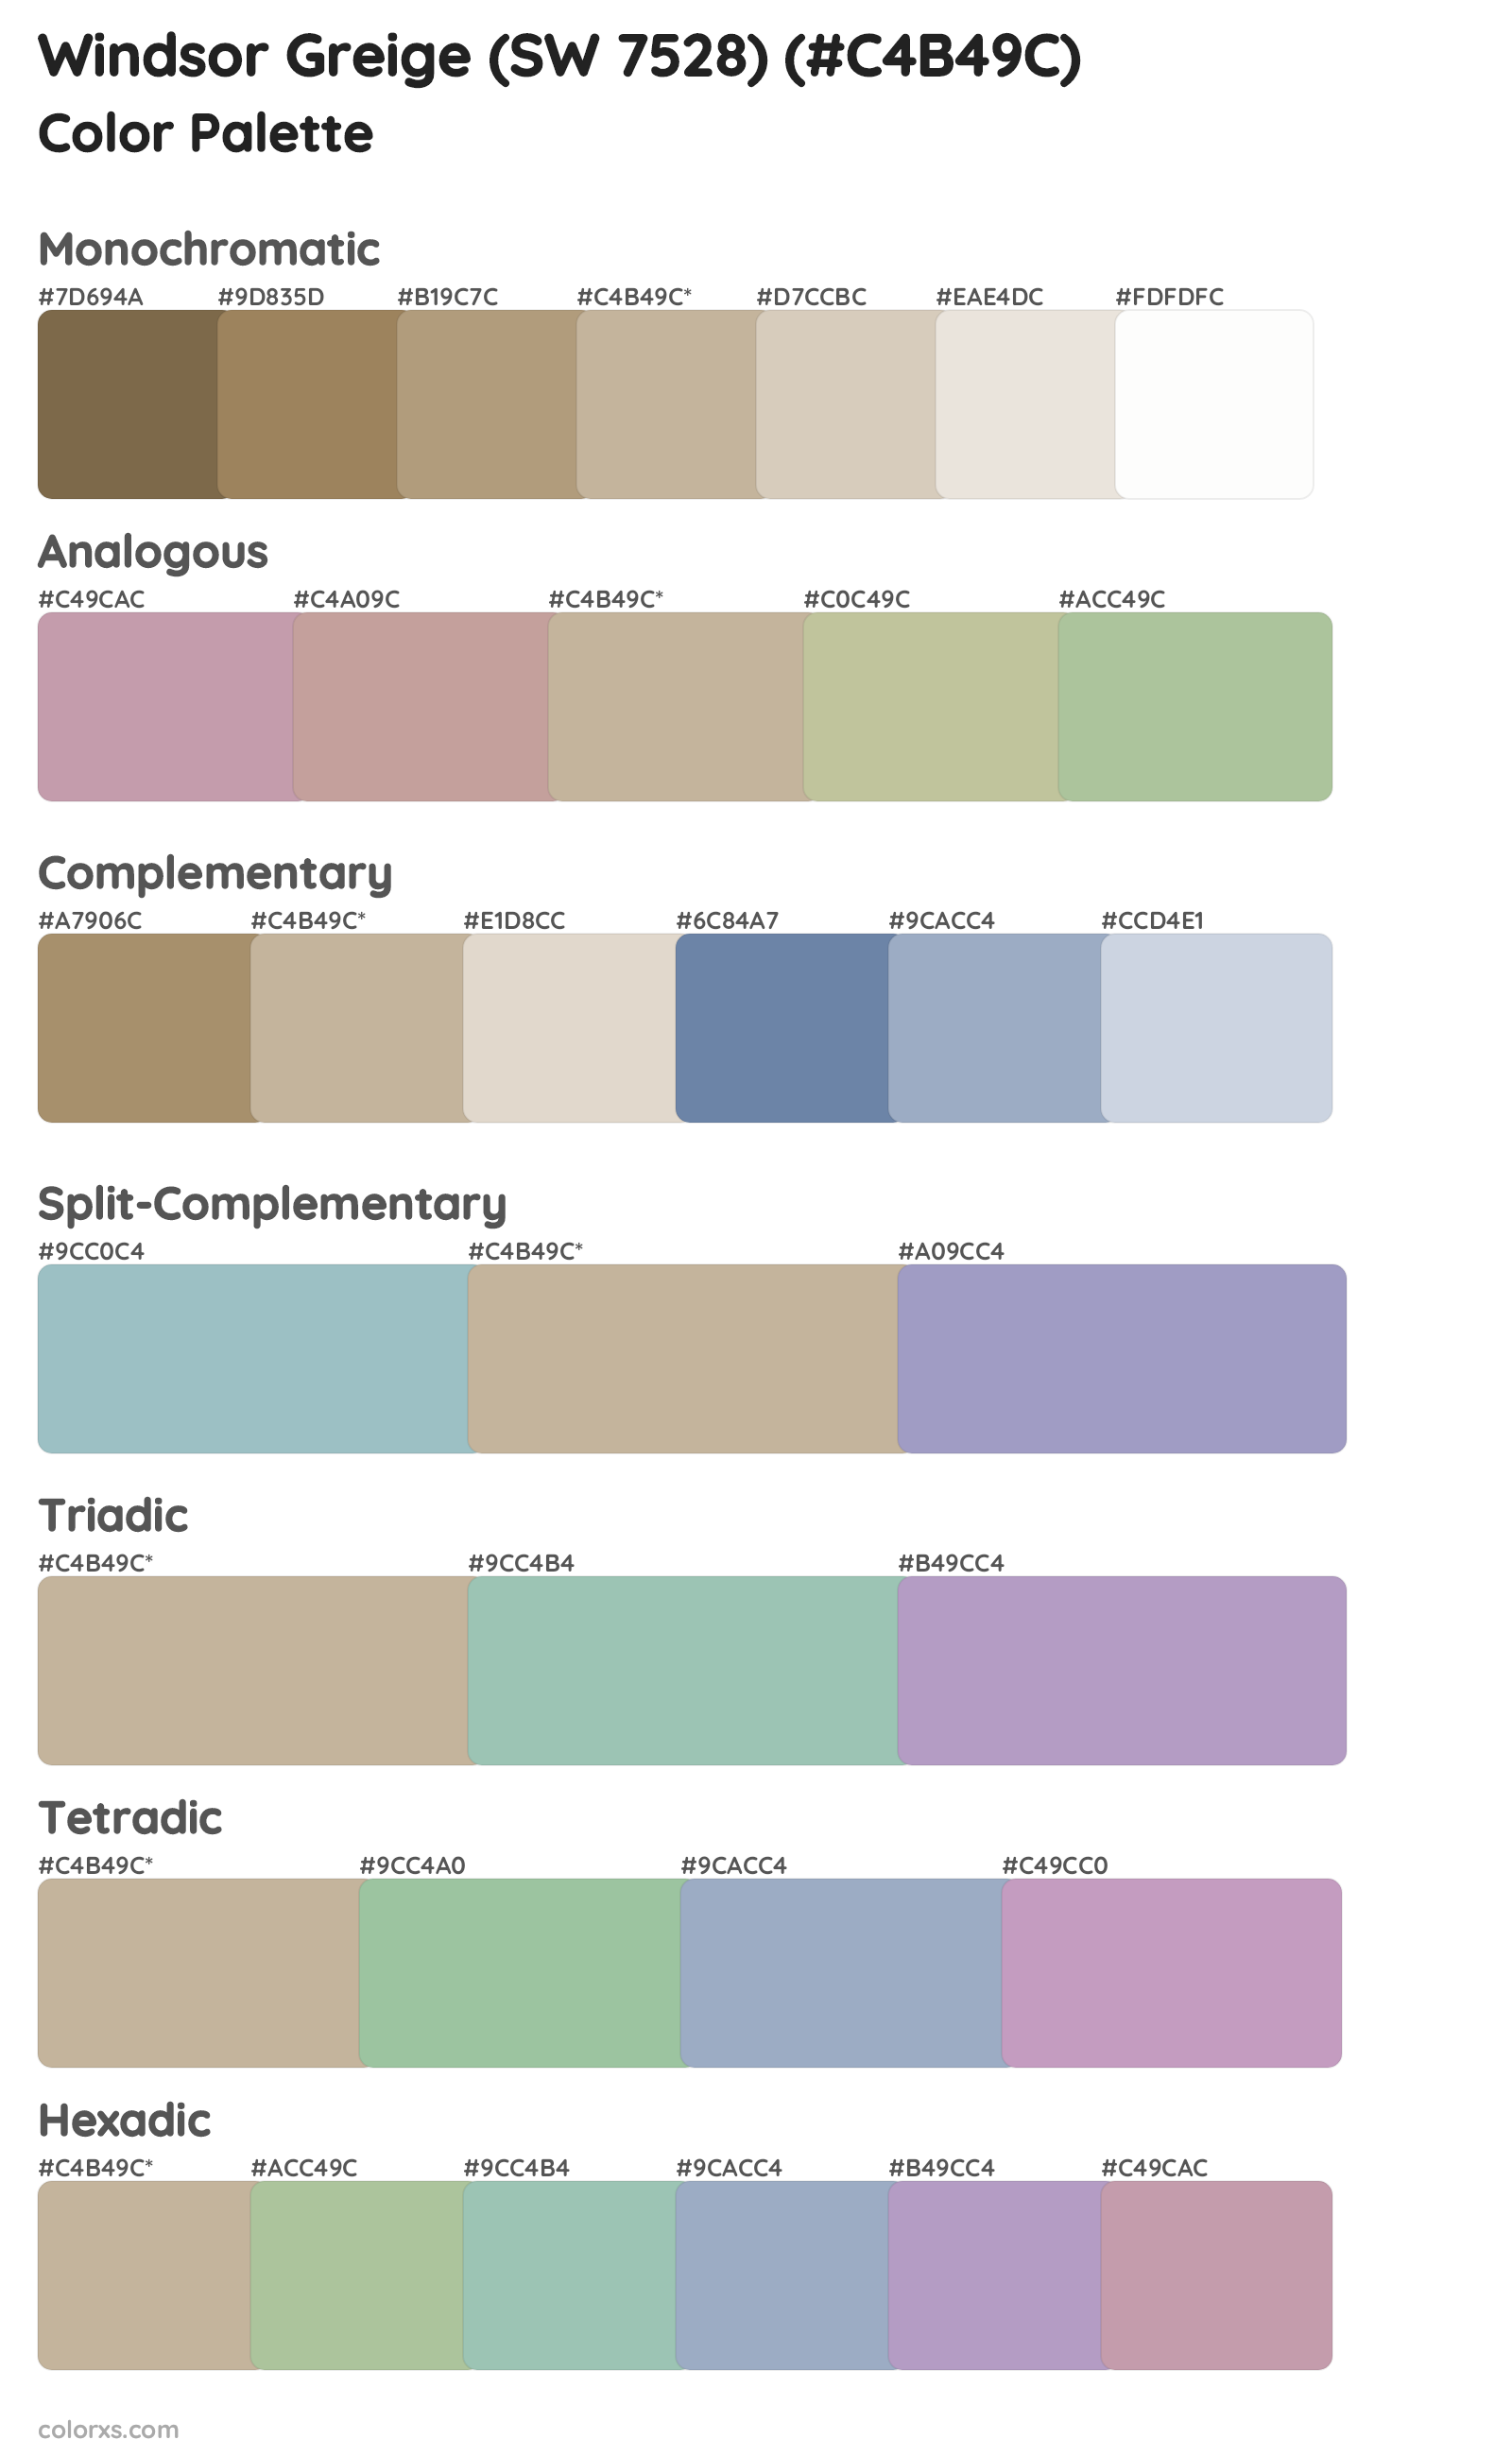 Windsor Greige (SW 7528) Color Scheme Palettes